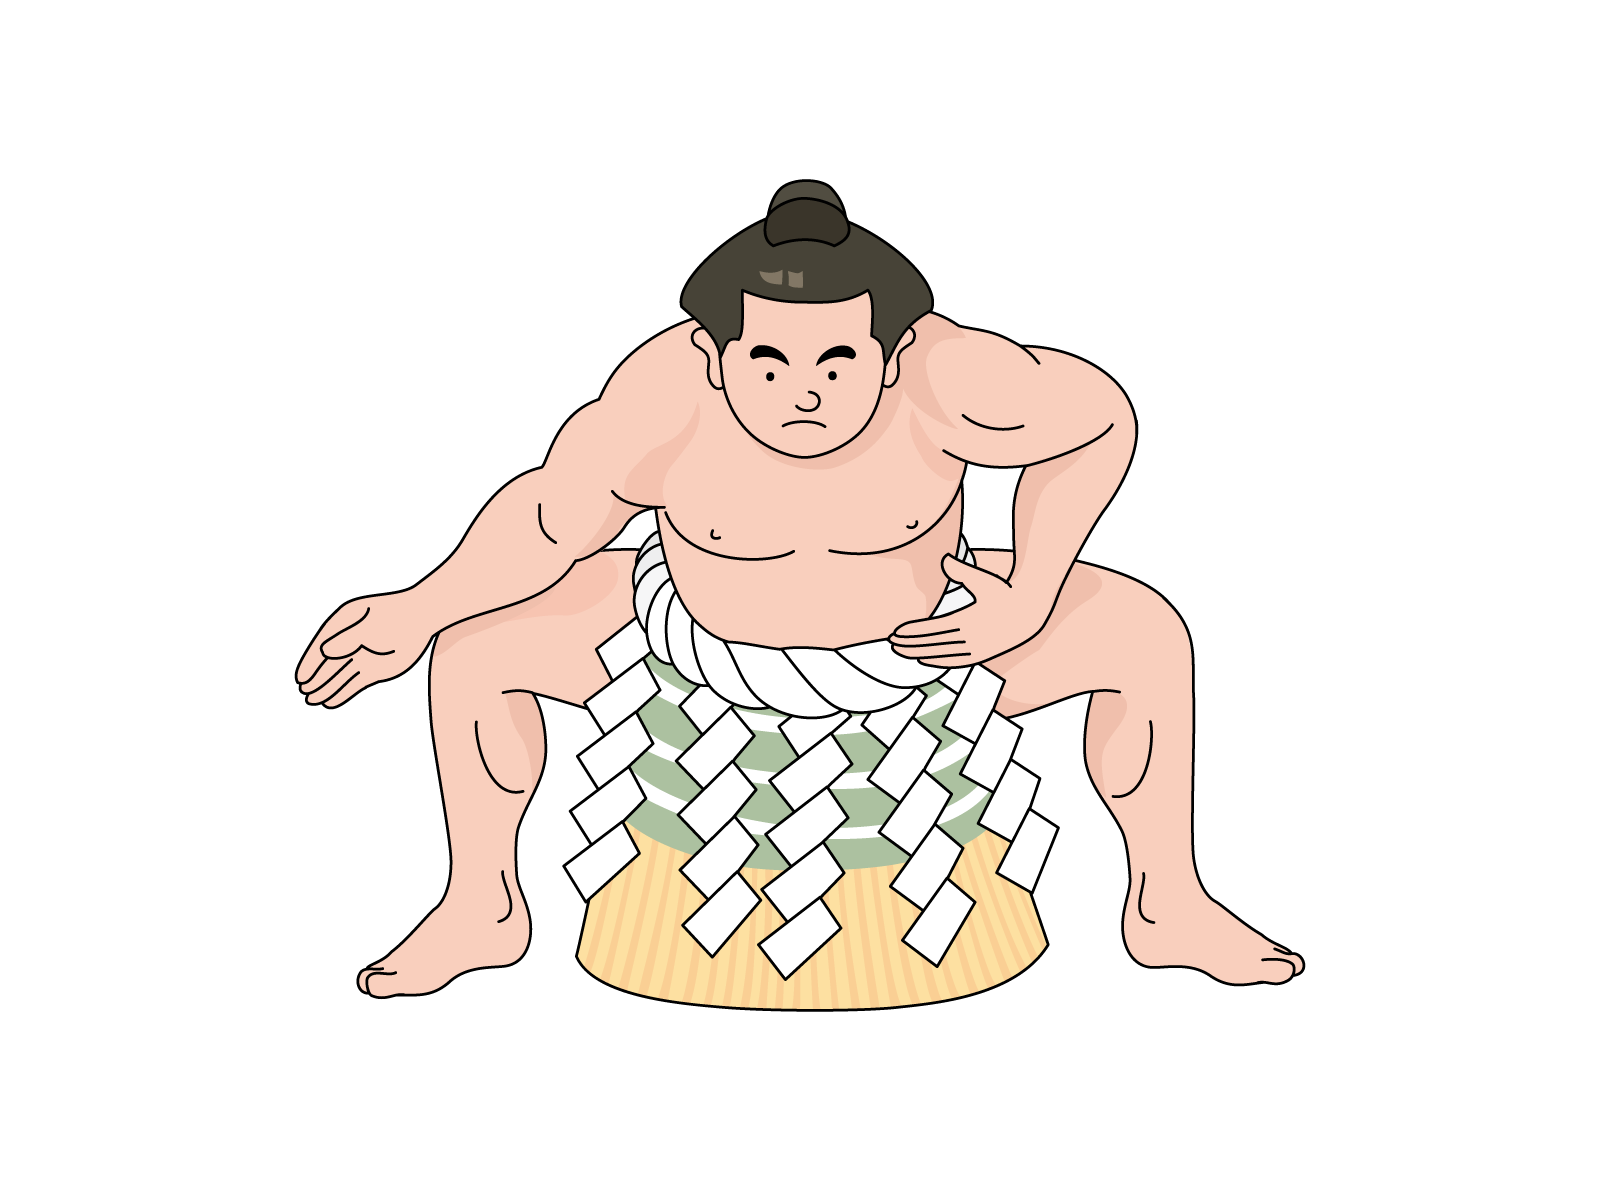 朝乃山学習帳のイラストを描いている相撲漫画家琴剣淳也のプロフィール